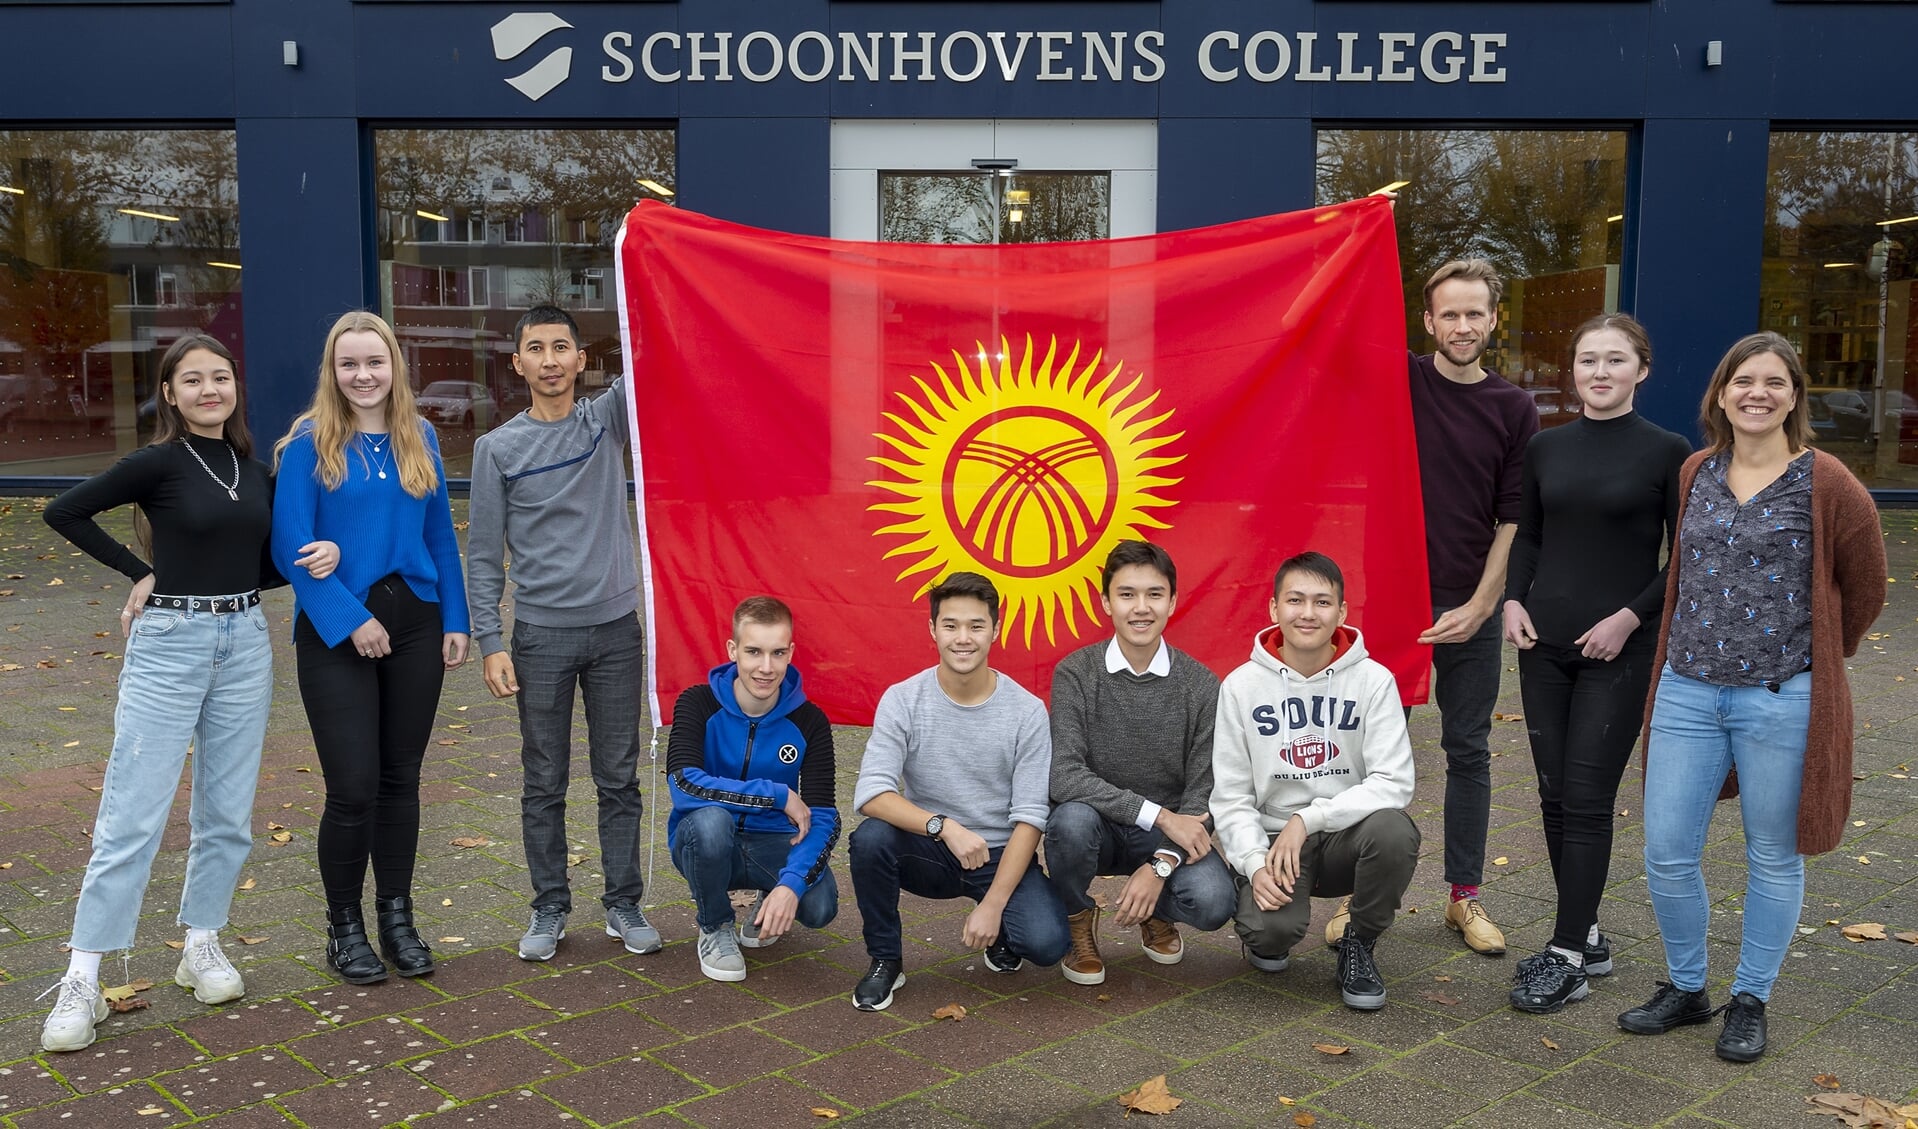 • Groepsfoto voor het Schoonhovens College.